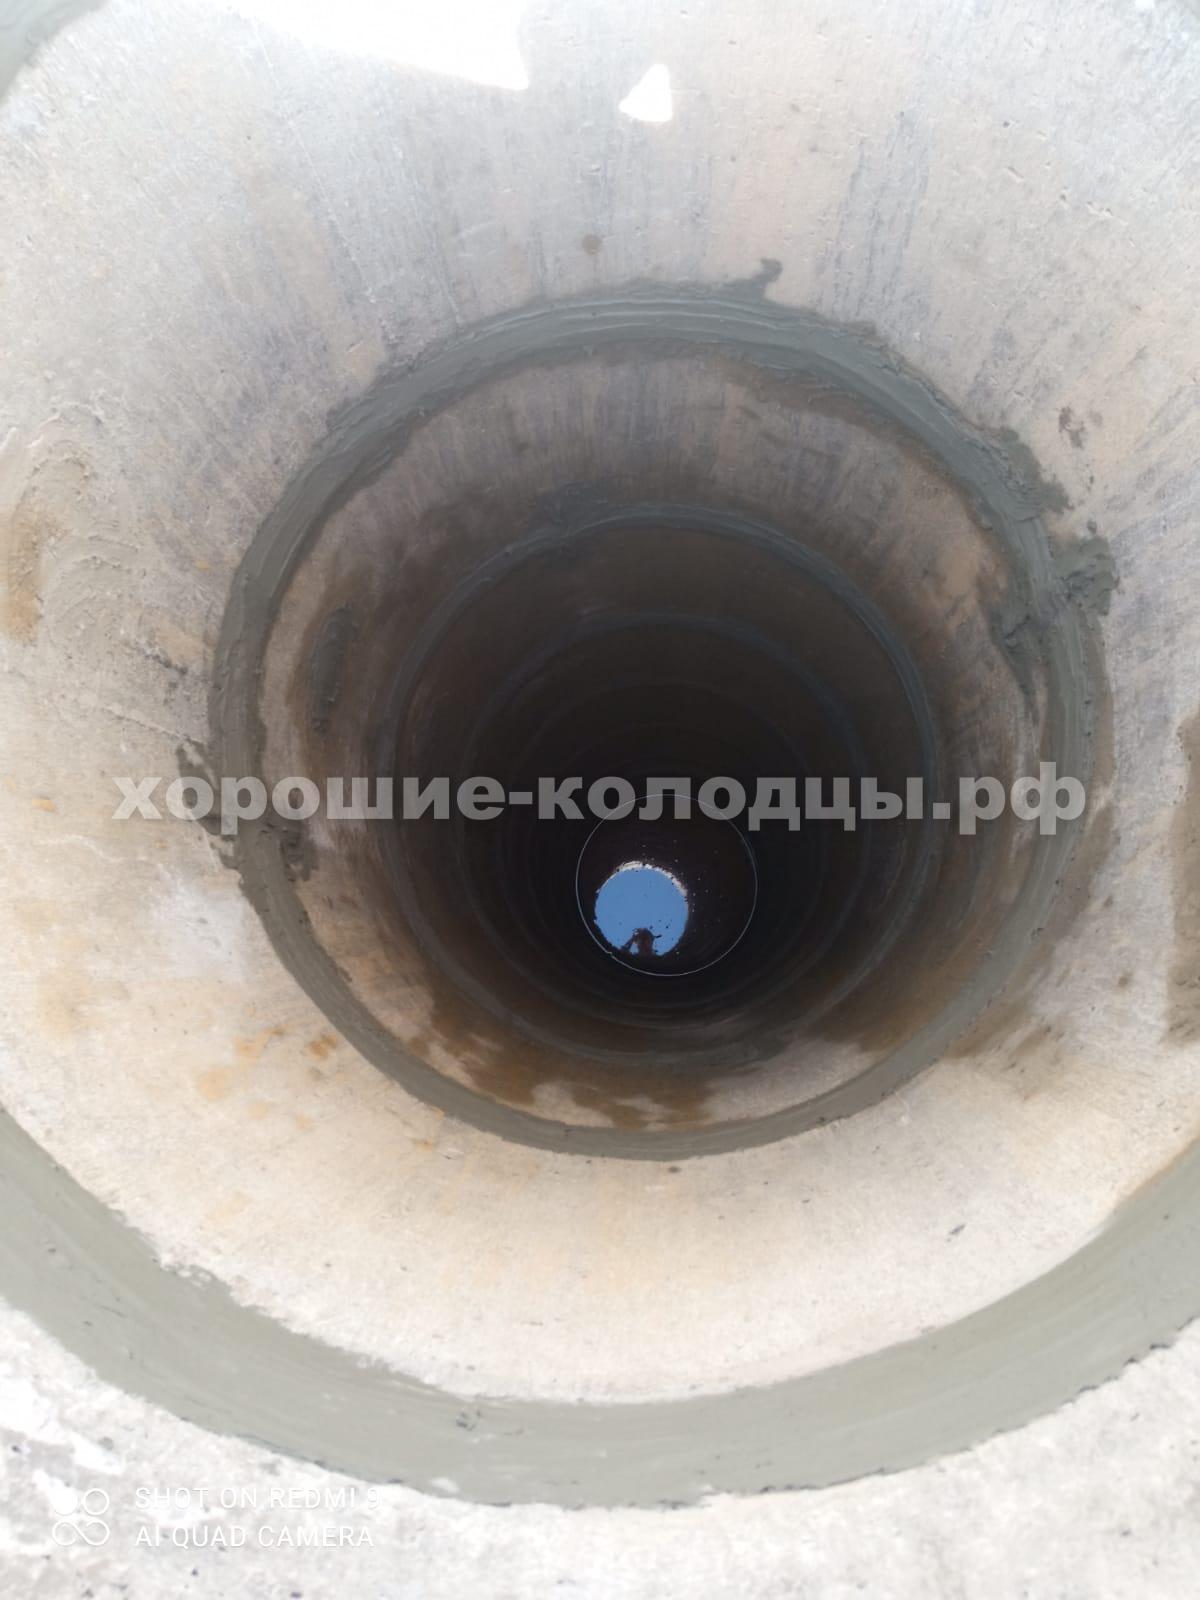 Чистка колодца на воду 10 колец в КП Солнце, Волоколамский р-н, Подмосковье.